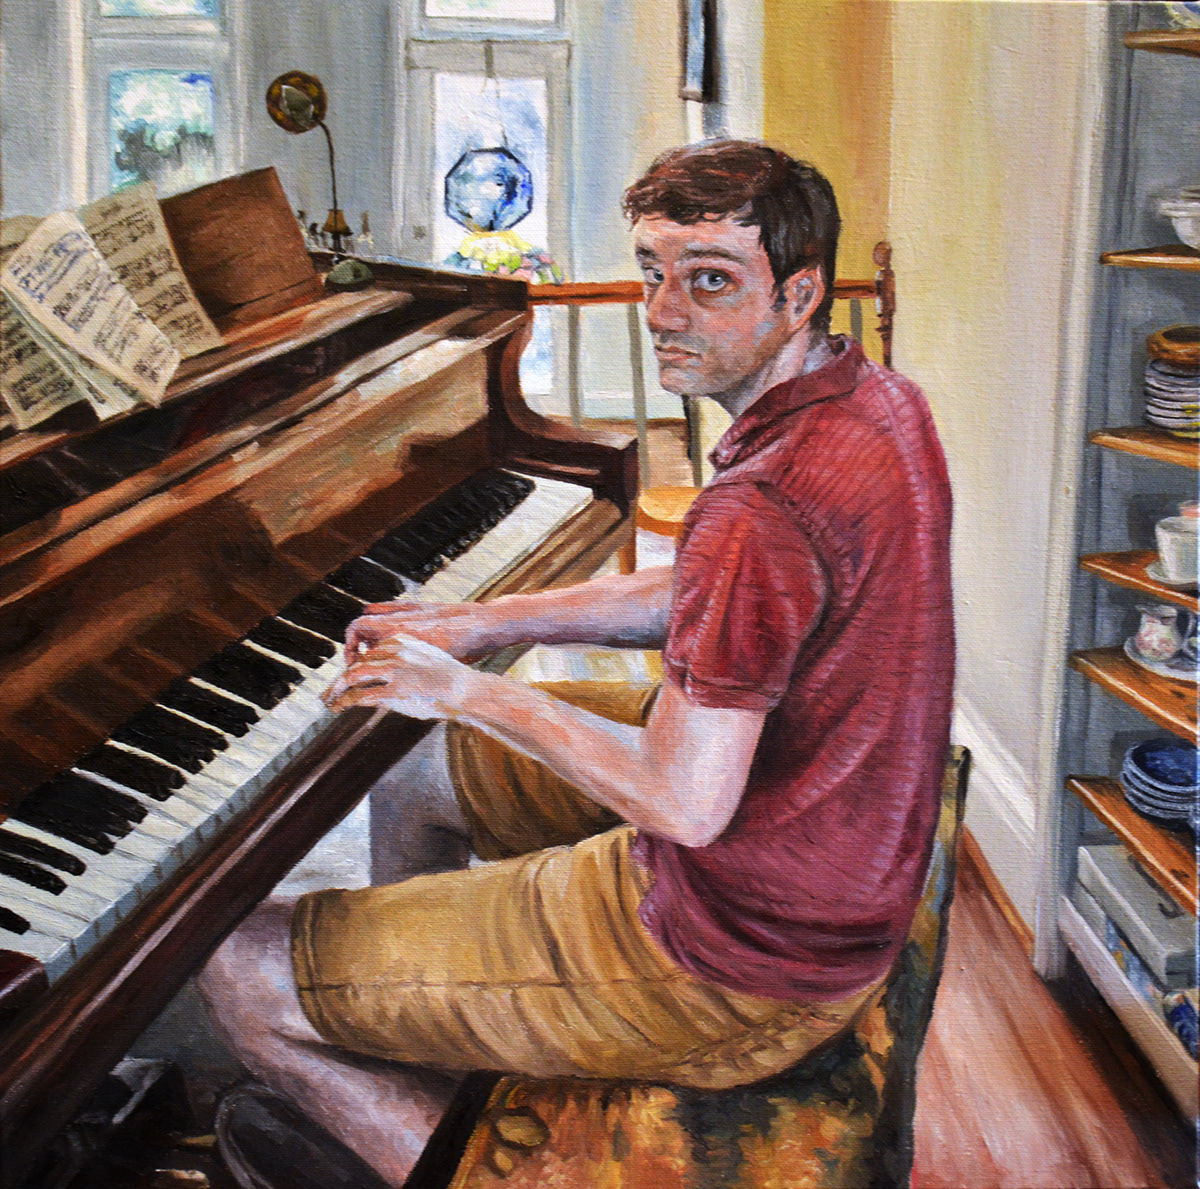 chris Oil Painting Piano portrait Portraiture